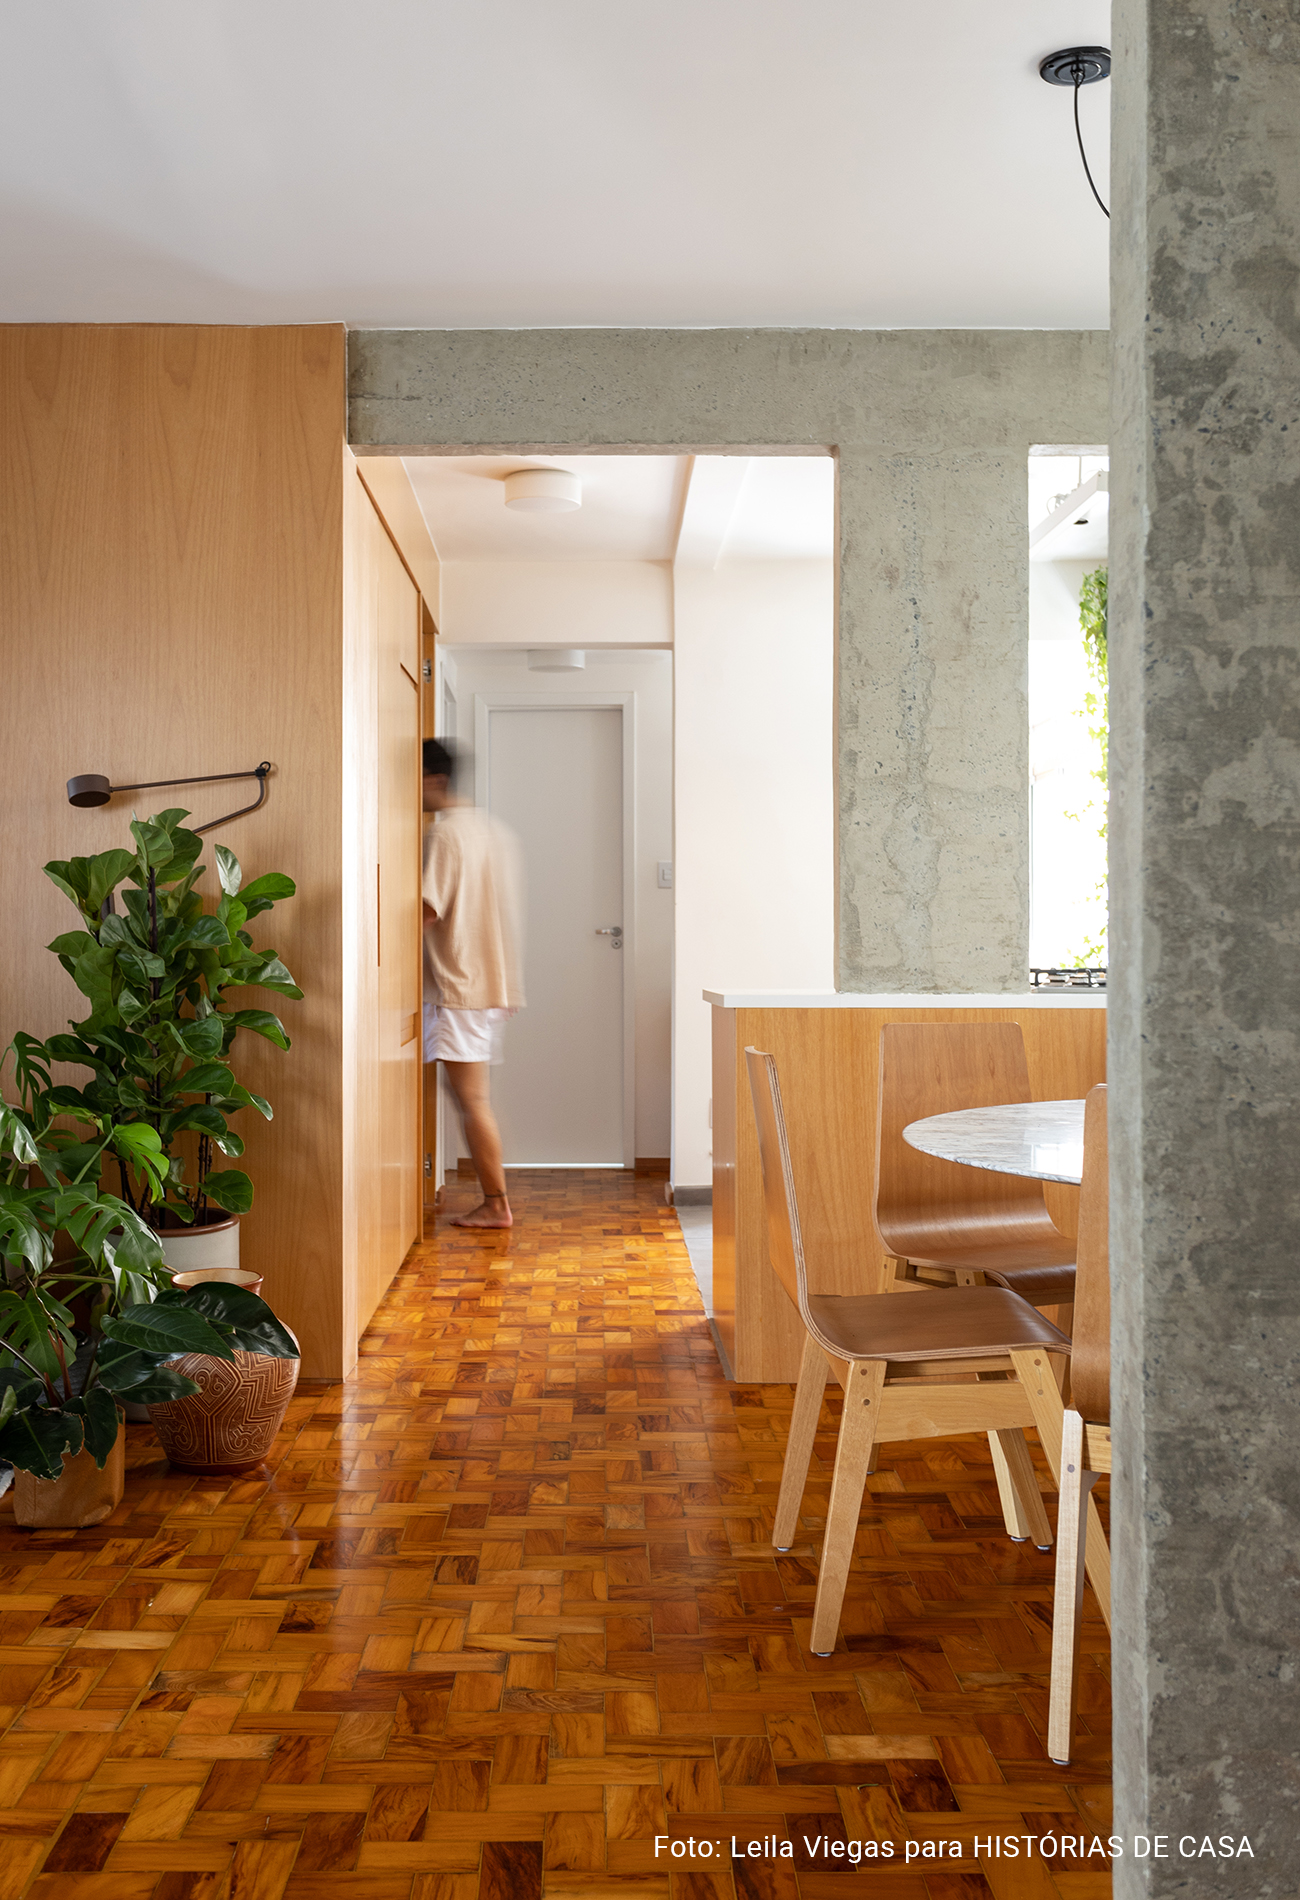 Apartamento com concreto, madeira e cozinha integrada.